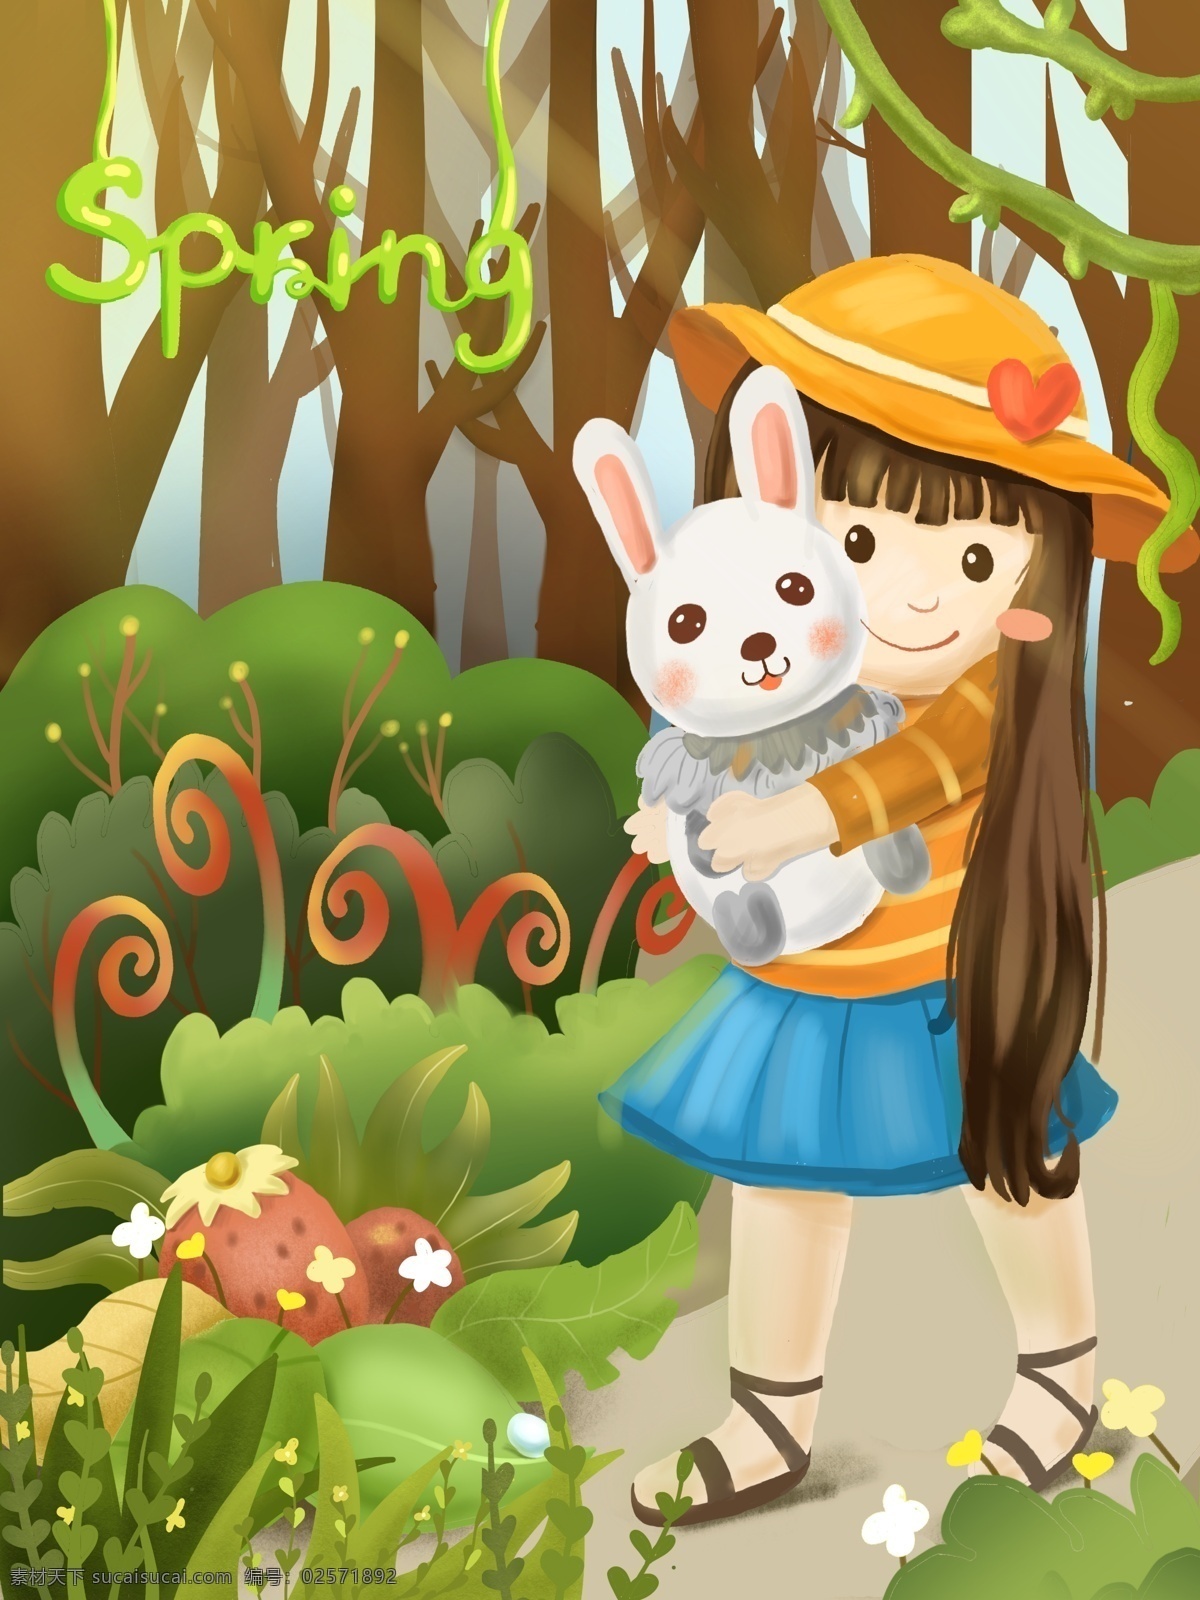 四月 你好 美好 春日 spring 女孩 兔子 植物 花草 绿色 树木 青春 活泼